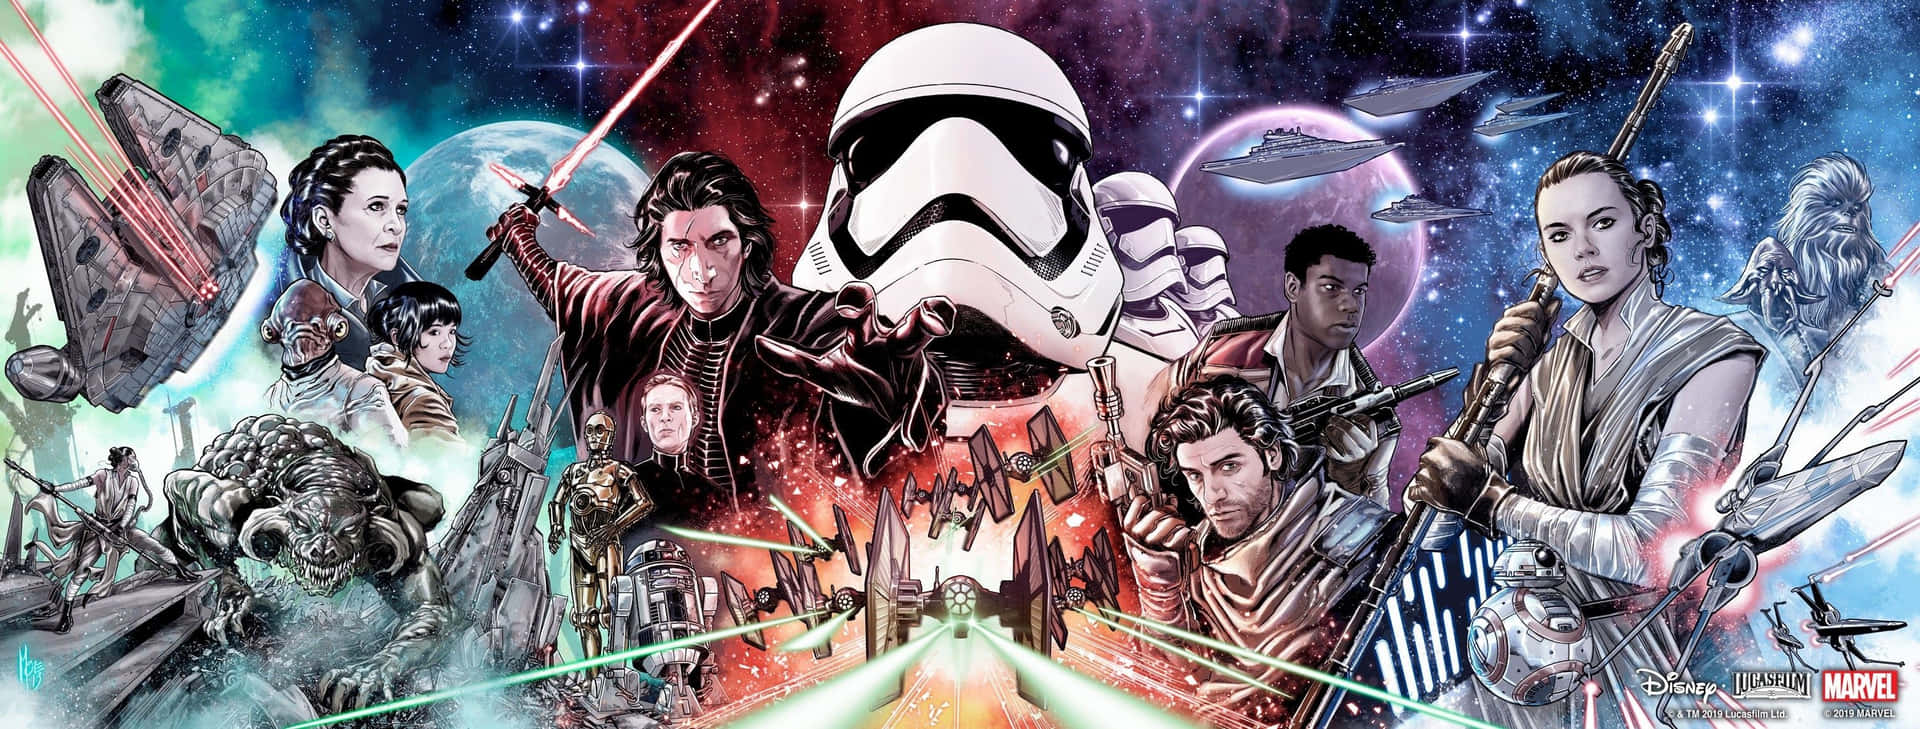 Star Wars-karaktärer 3000 X 1139 Wallpaper